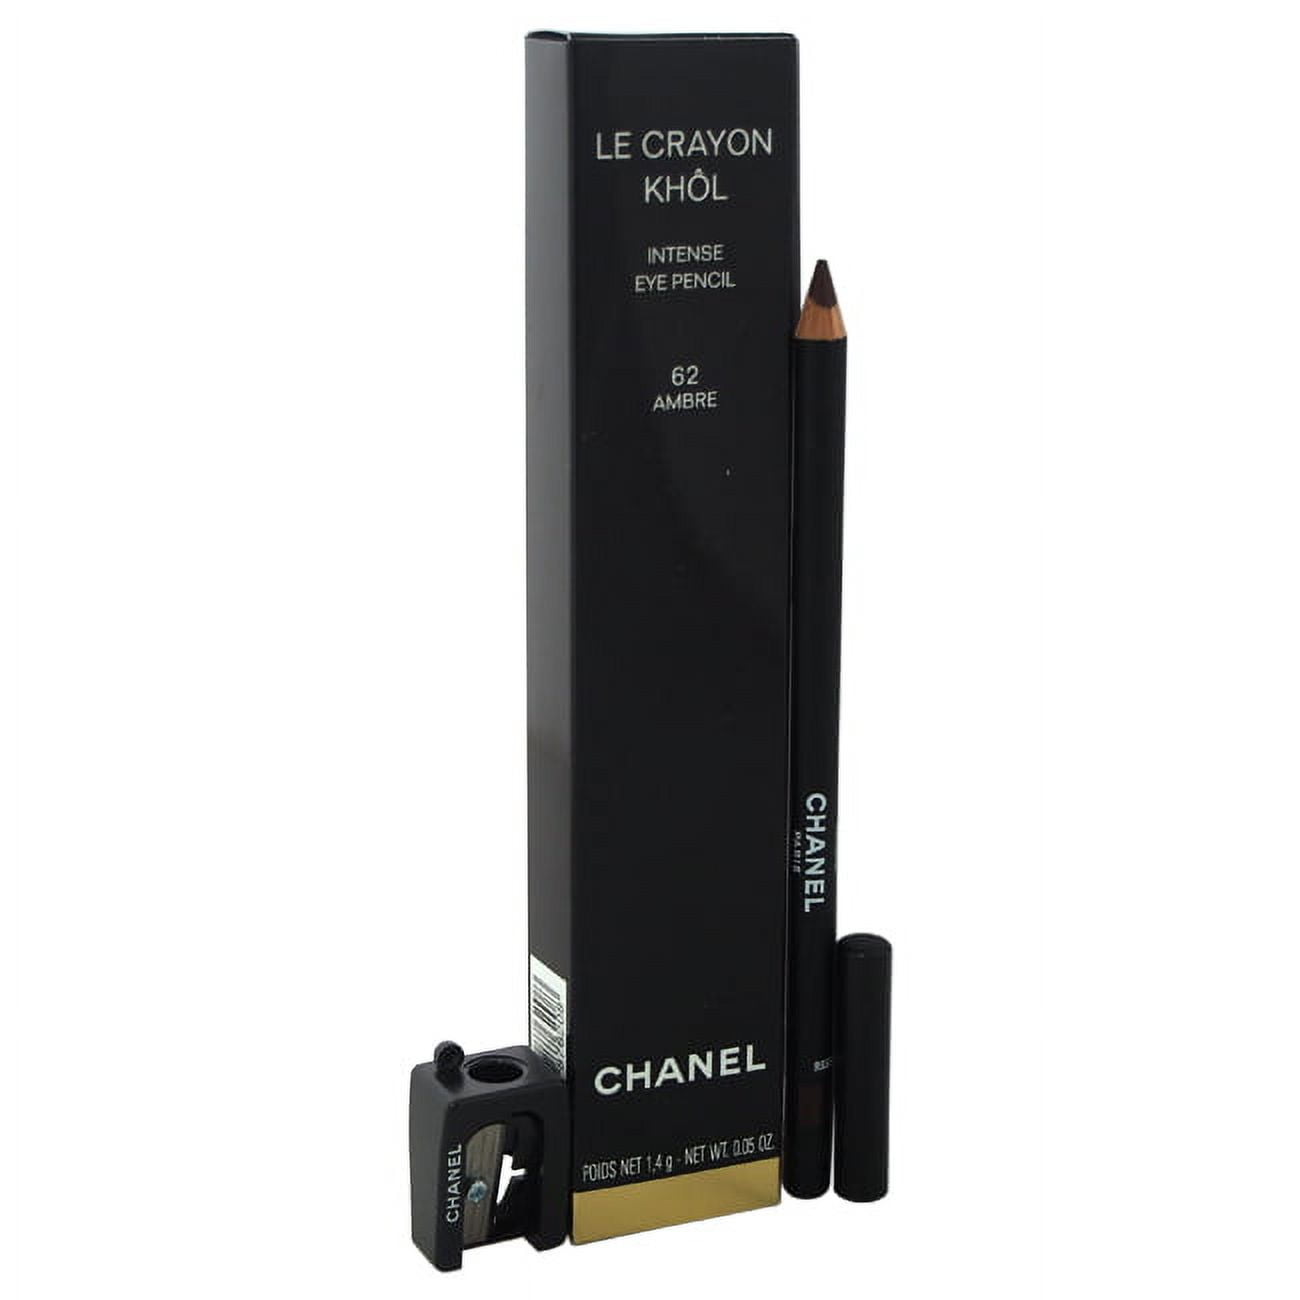 Le Crayon Khol Intense Eye Pencil - 62 Ambre by Chanel for Women - 0.05 oz  Eyeliner 